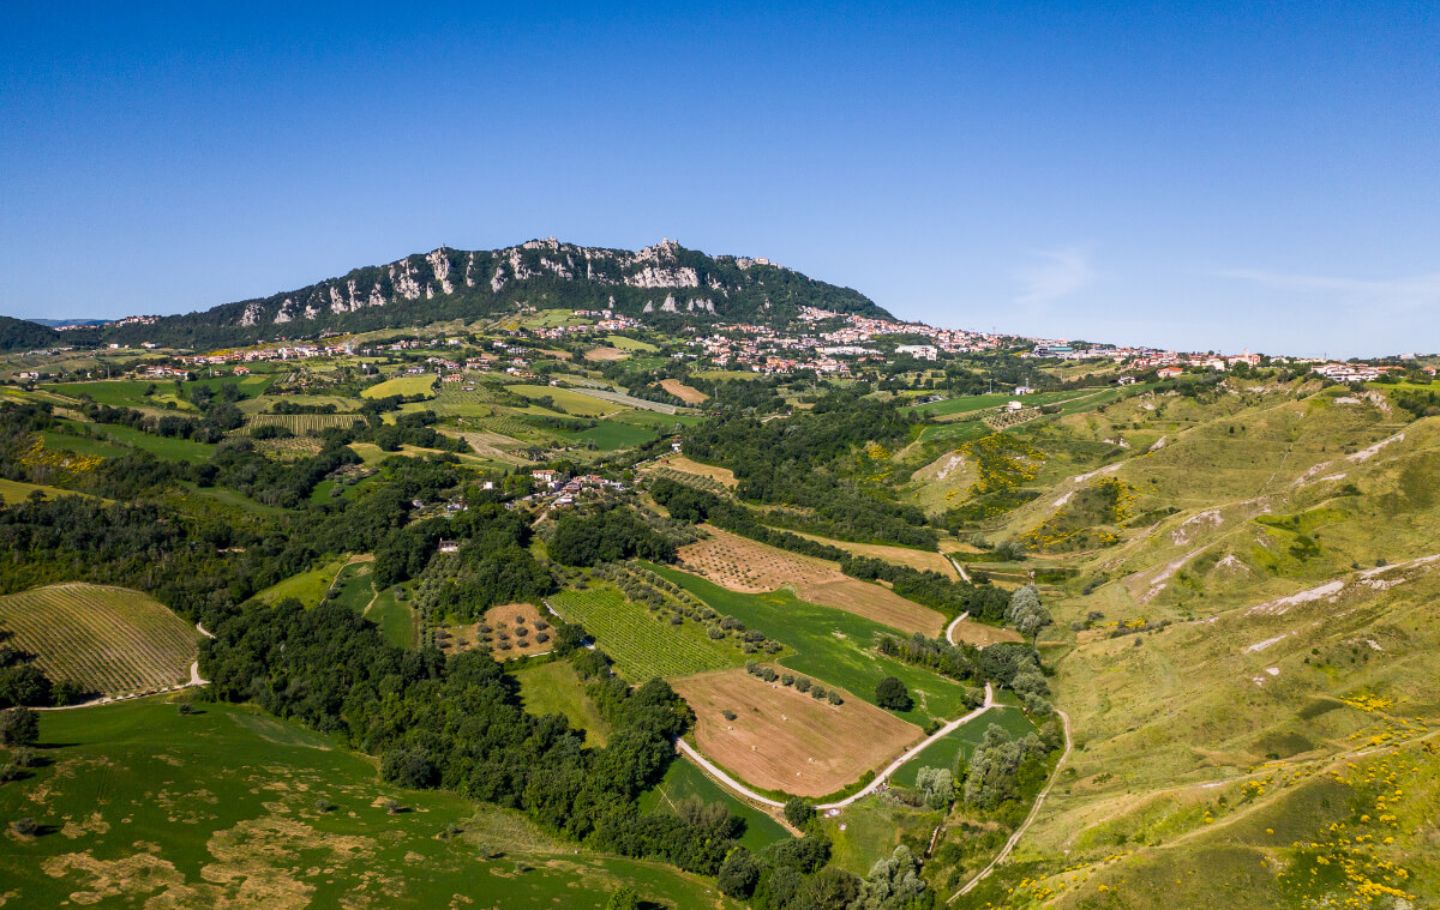 Vivere una vacanza a contatto con la natura? A San Marino si può!